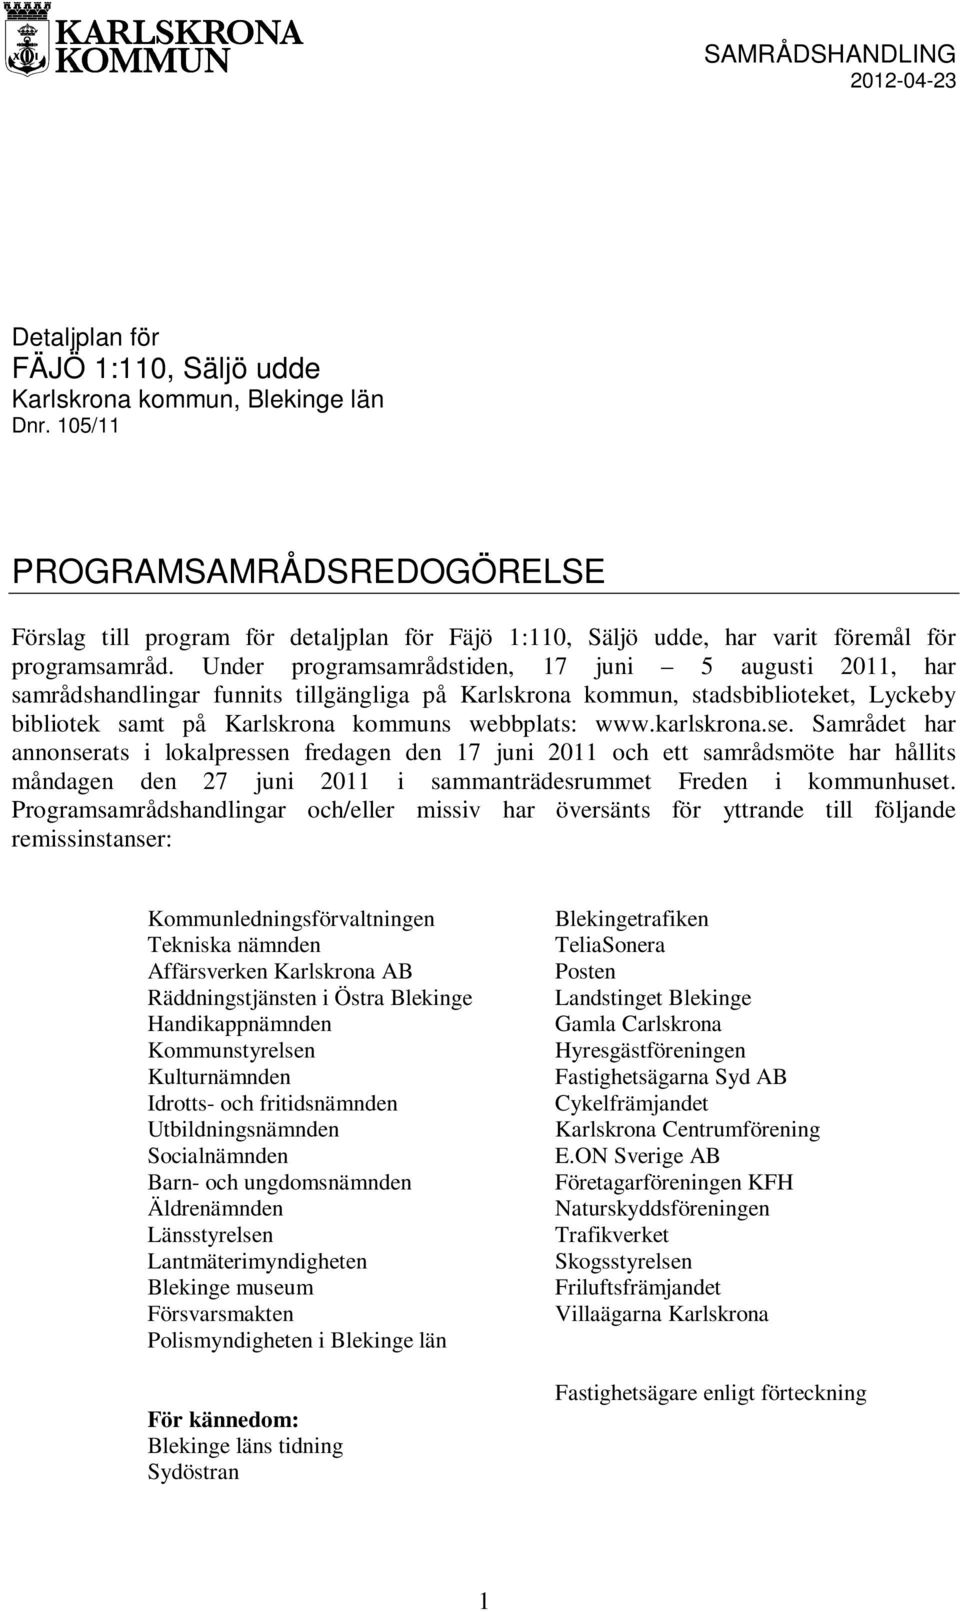 Under programsamrådstiden, 17 juni 5 augusti 2011, har samrådshandlingar funnits tillgängliga på Karlskrona kommun, stadsbiblioteket, Lyckeby bibliotek samt på Karlskrona kommuns webbplats: www.